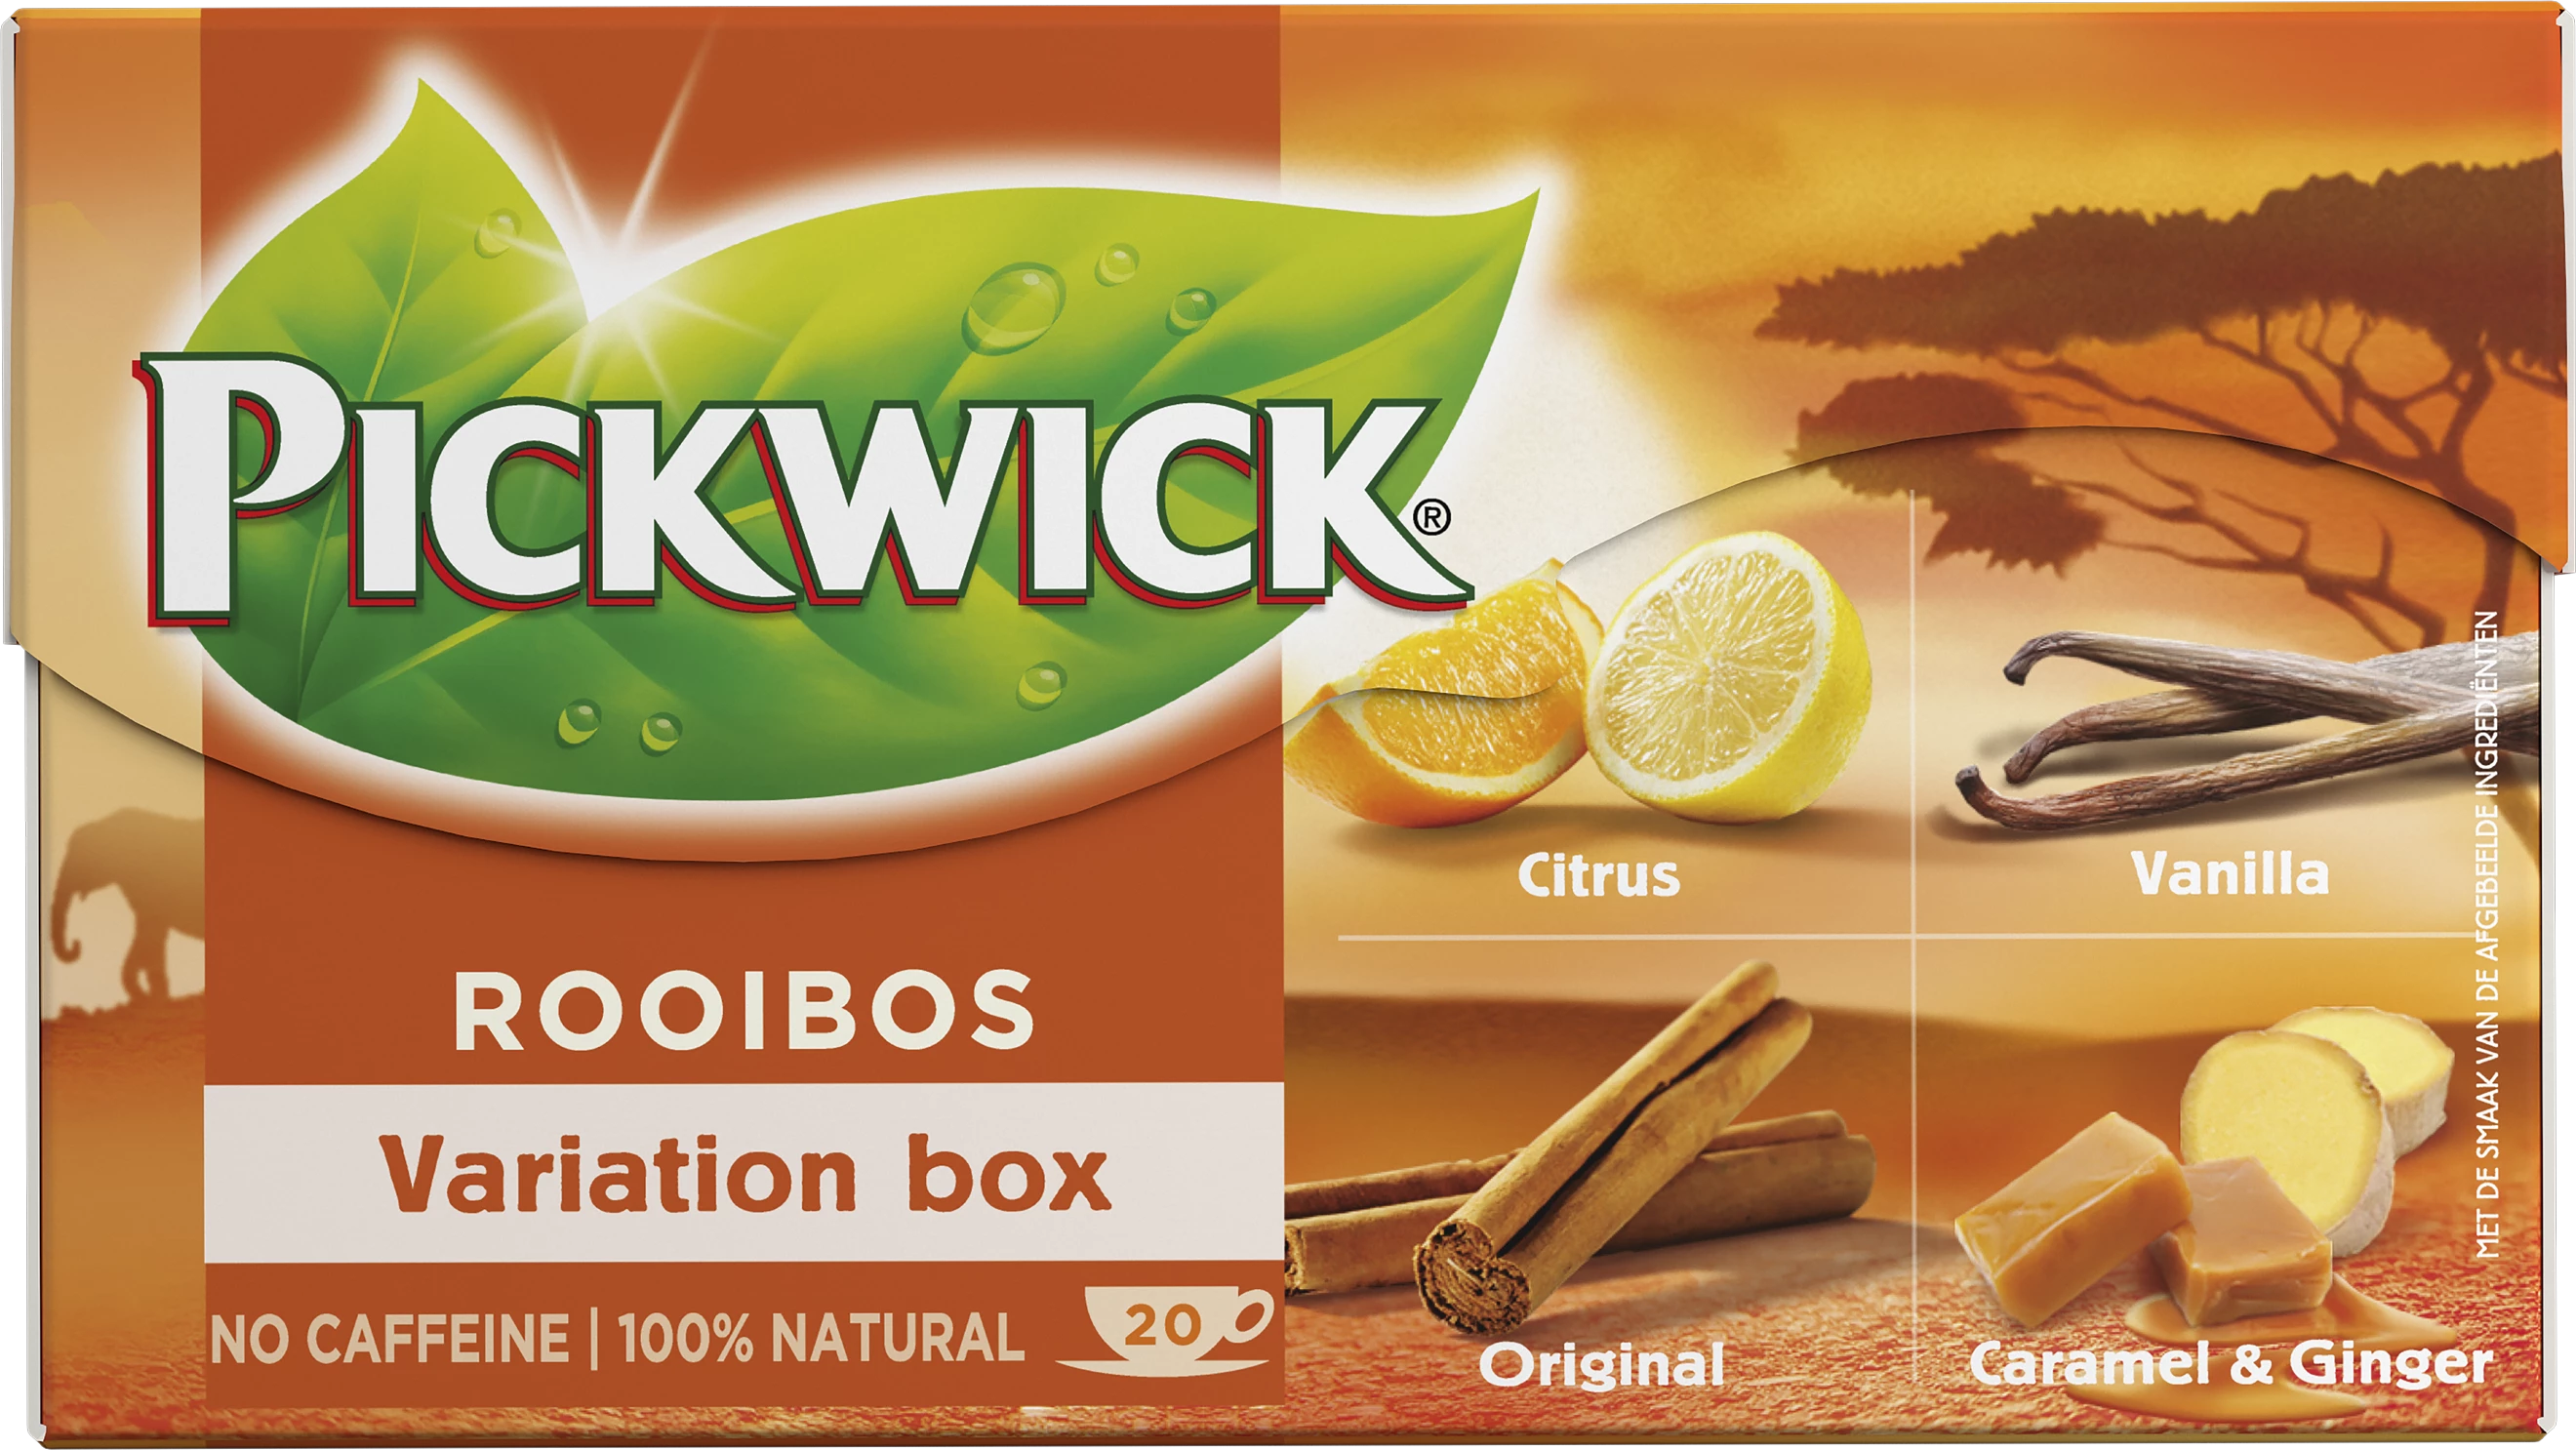 De pIckwick Rooibos variation box met verschillende soorten rooibos, zoals original, citrus, vanilla en caramel en ginger.